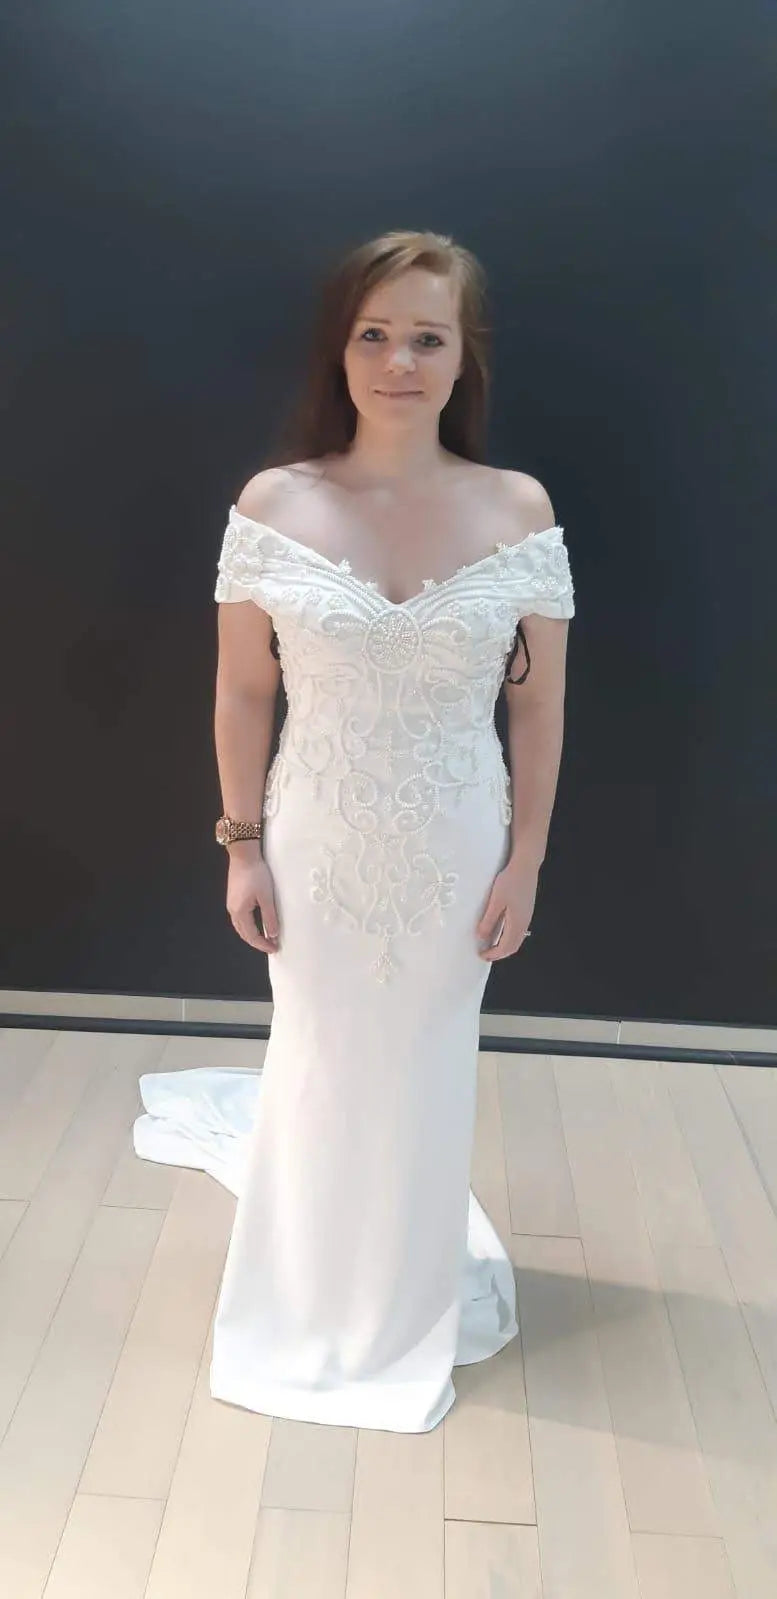 Effortlessly elegant in the AFWHarmony wedding dress. Aisha Fashion World